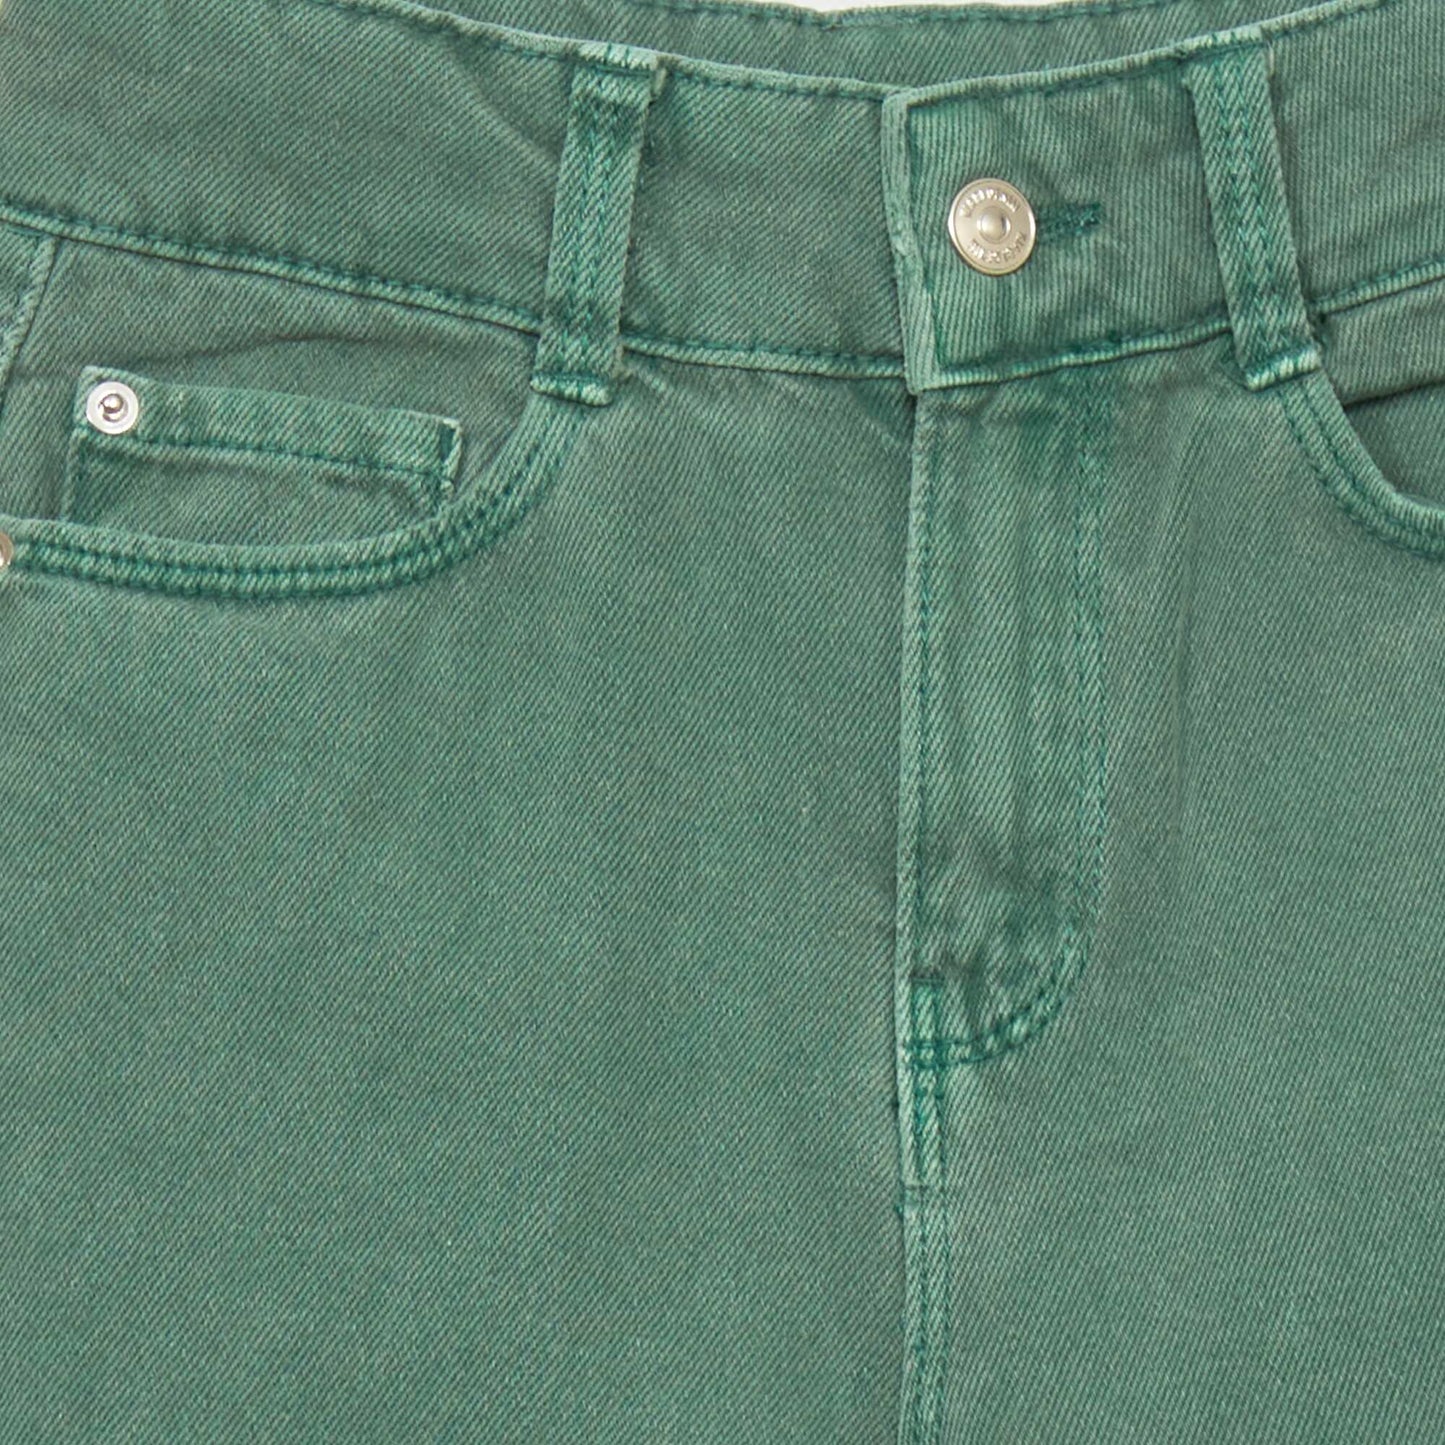 Wide-leg 5-pocket jeans Green